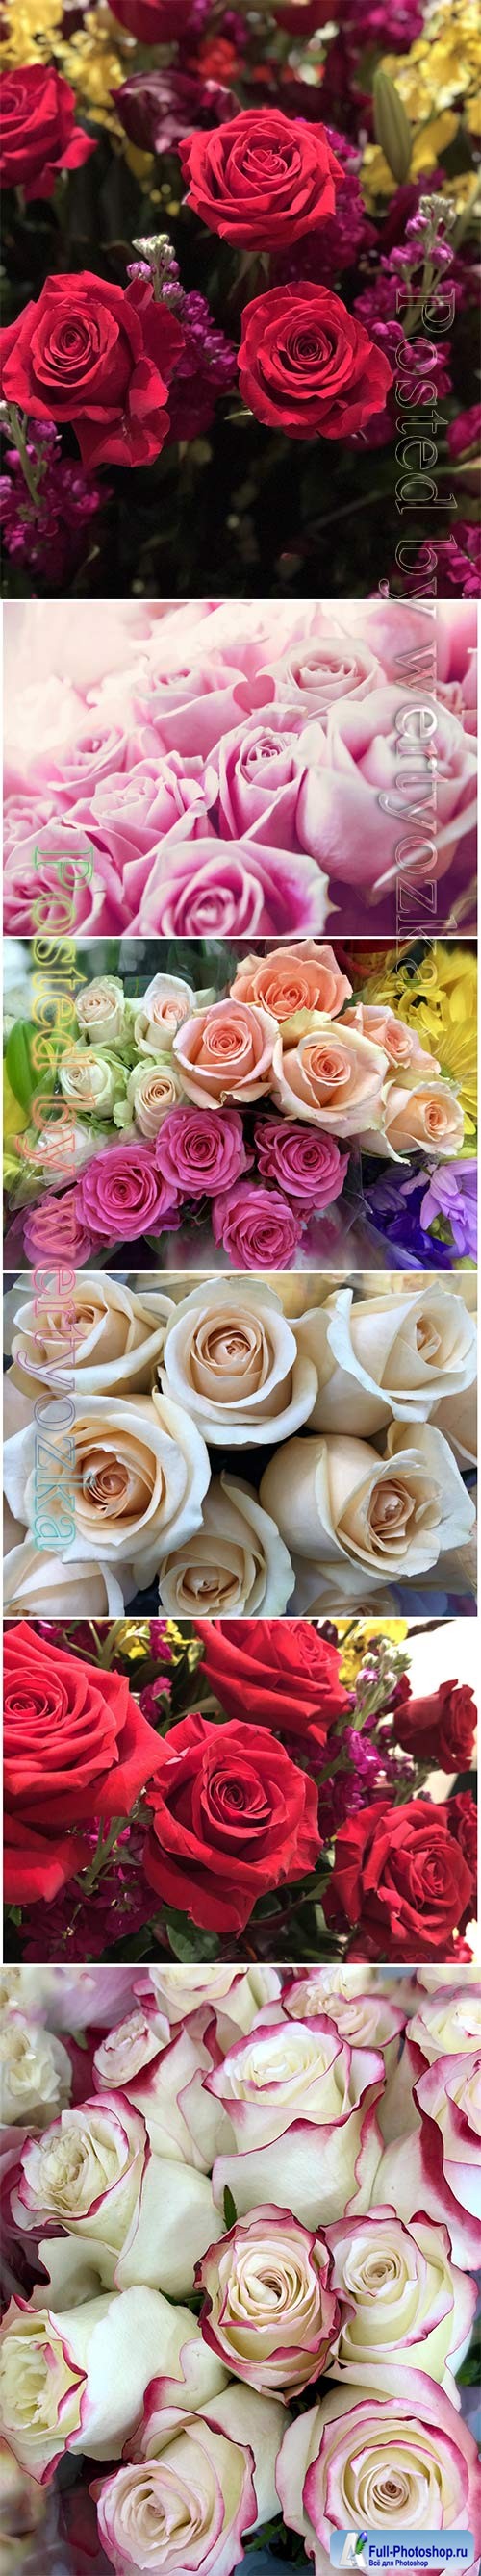 Roses beautiful stock photo